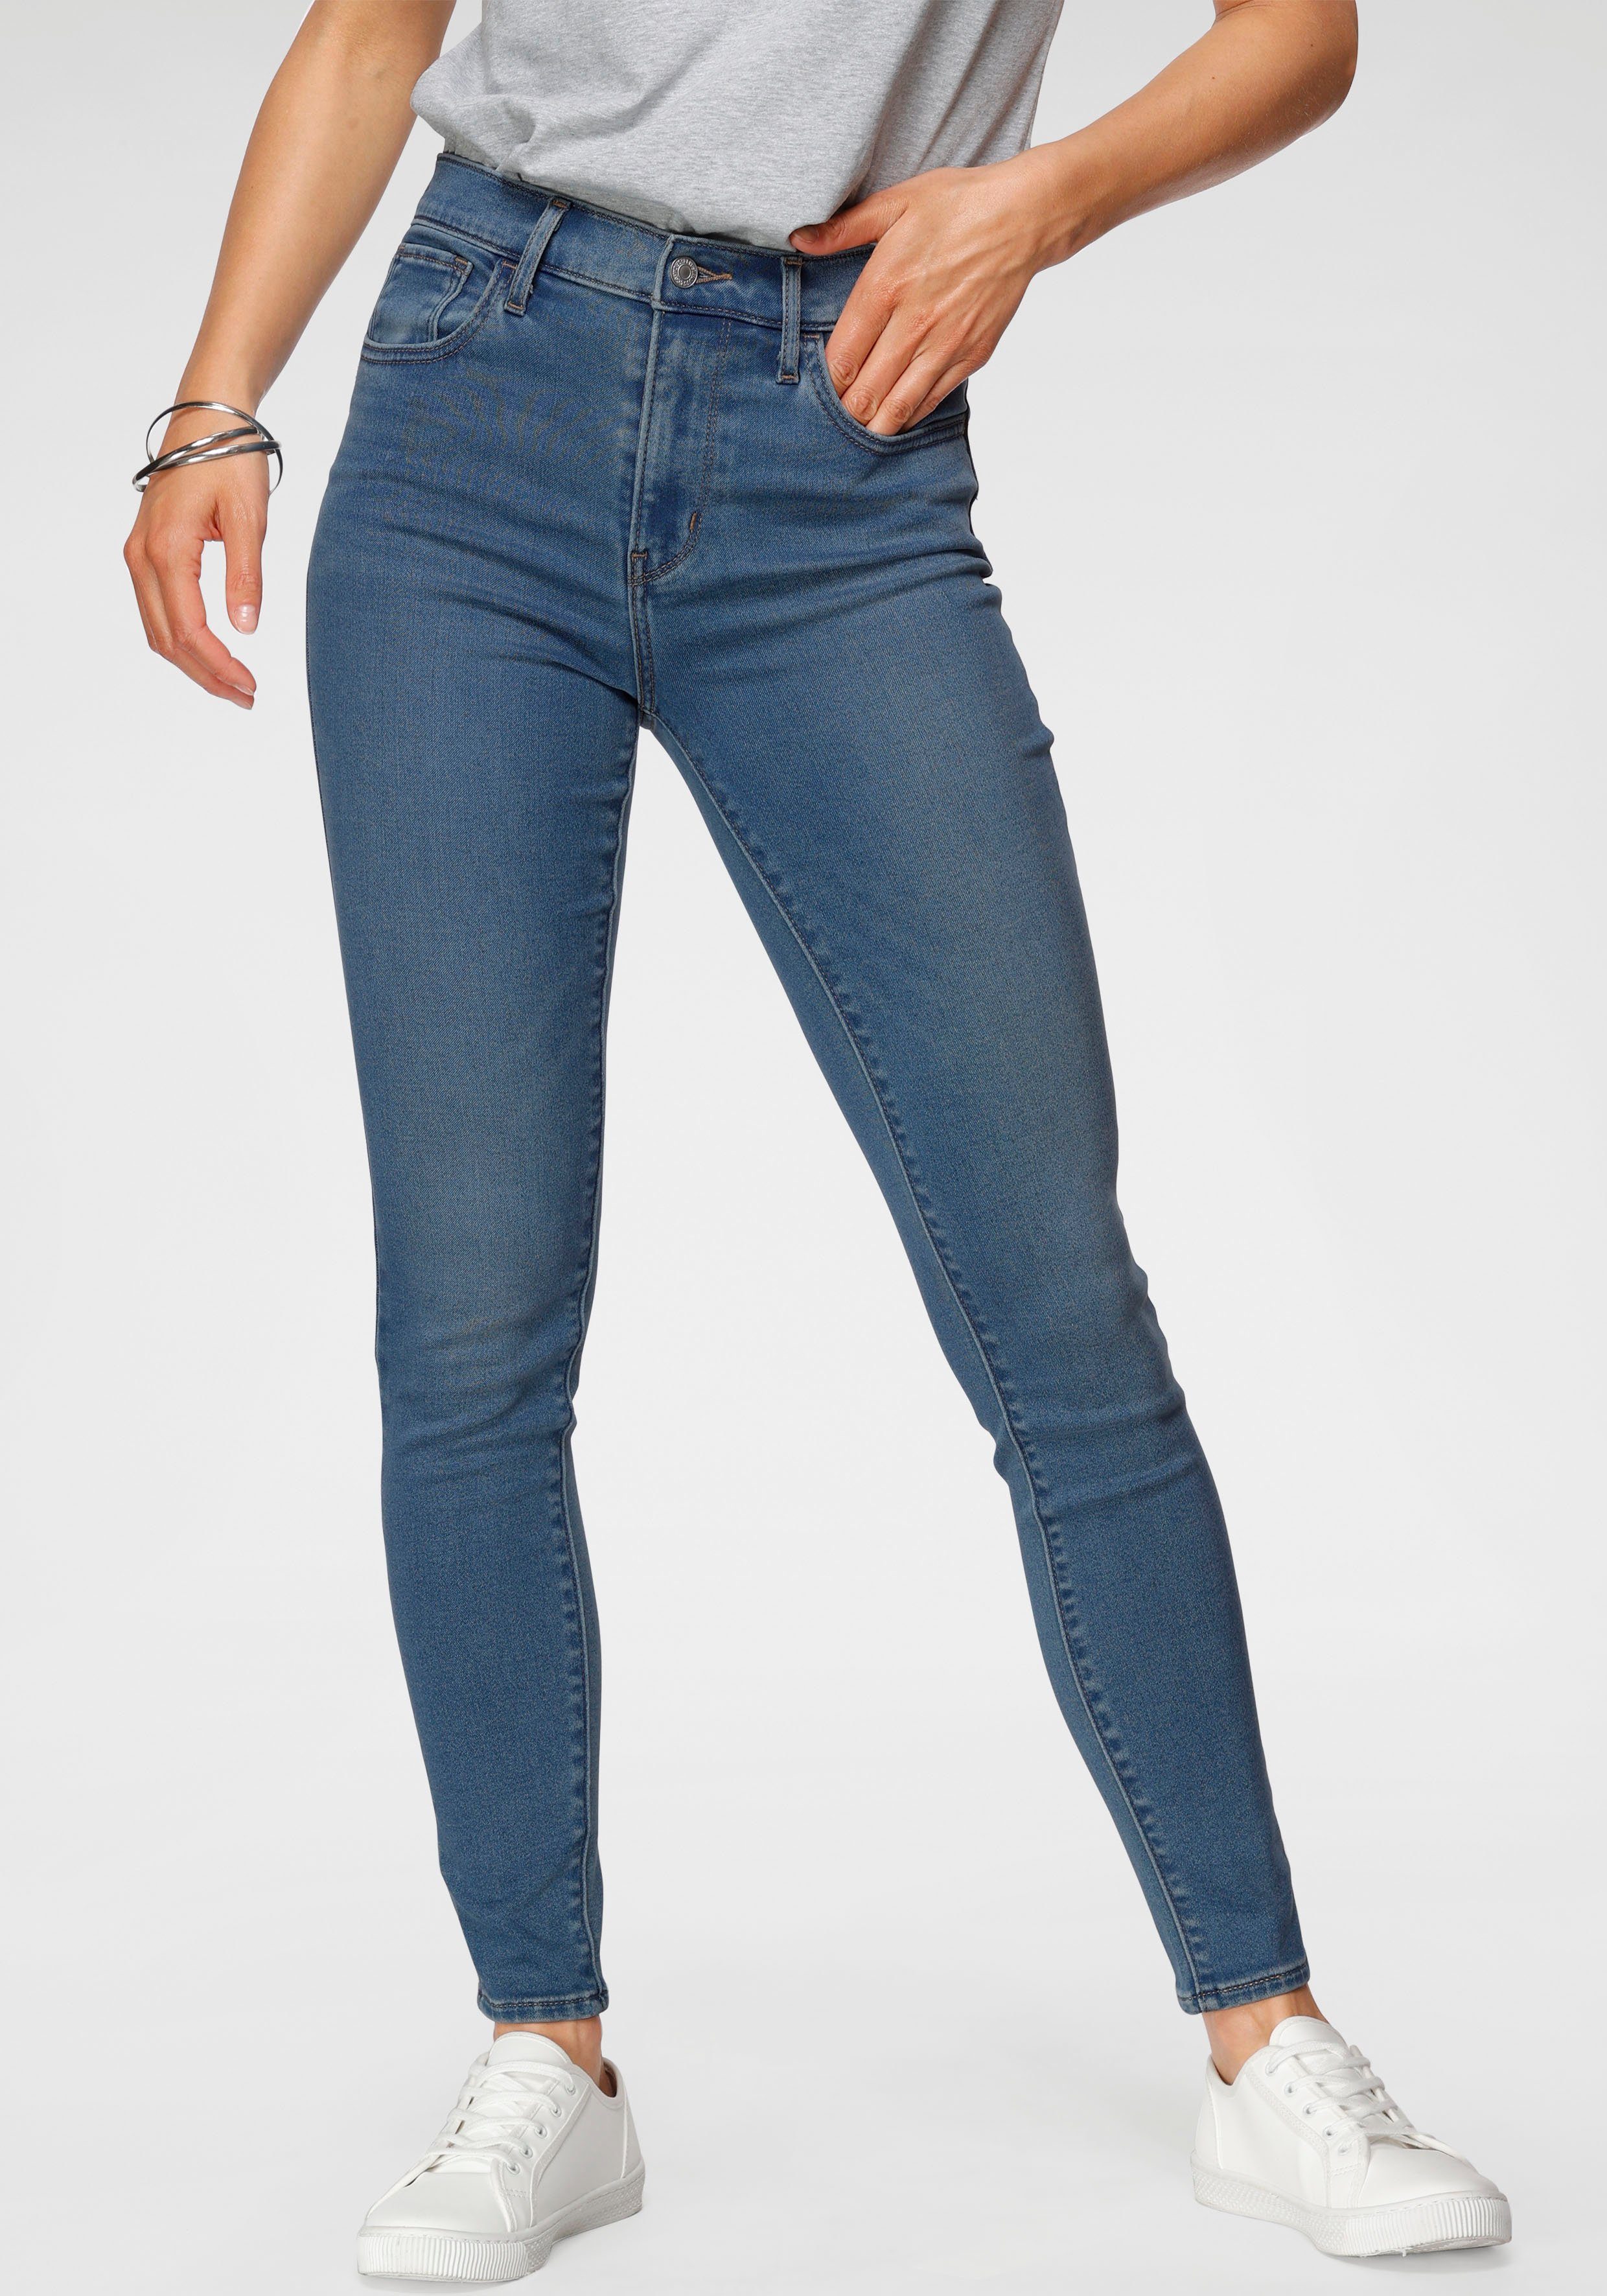 Blaue Jeans online kaufen | OTTO